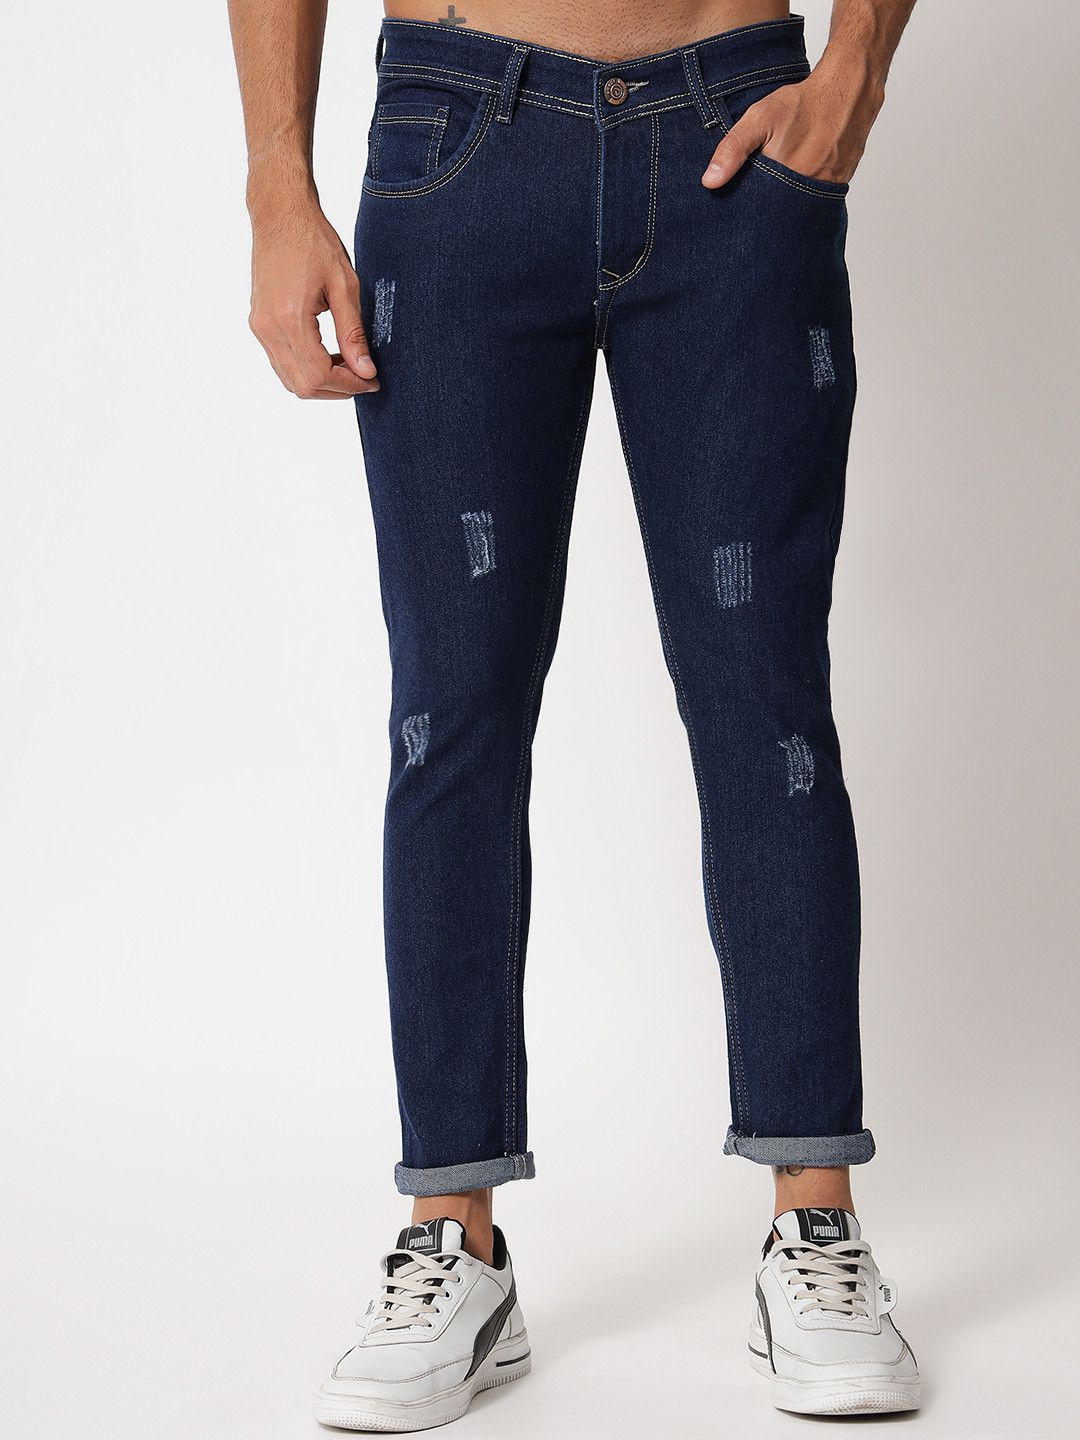 PODGE - Dark Blue Denim Slim Fit Men's Jeans ( Pack of 1 )